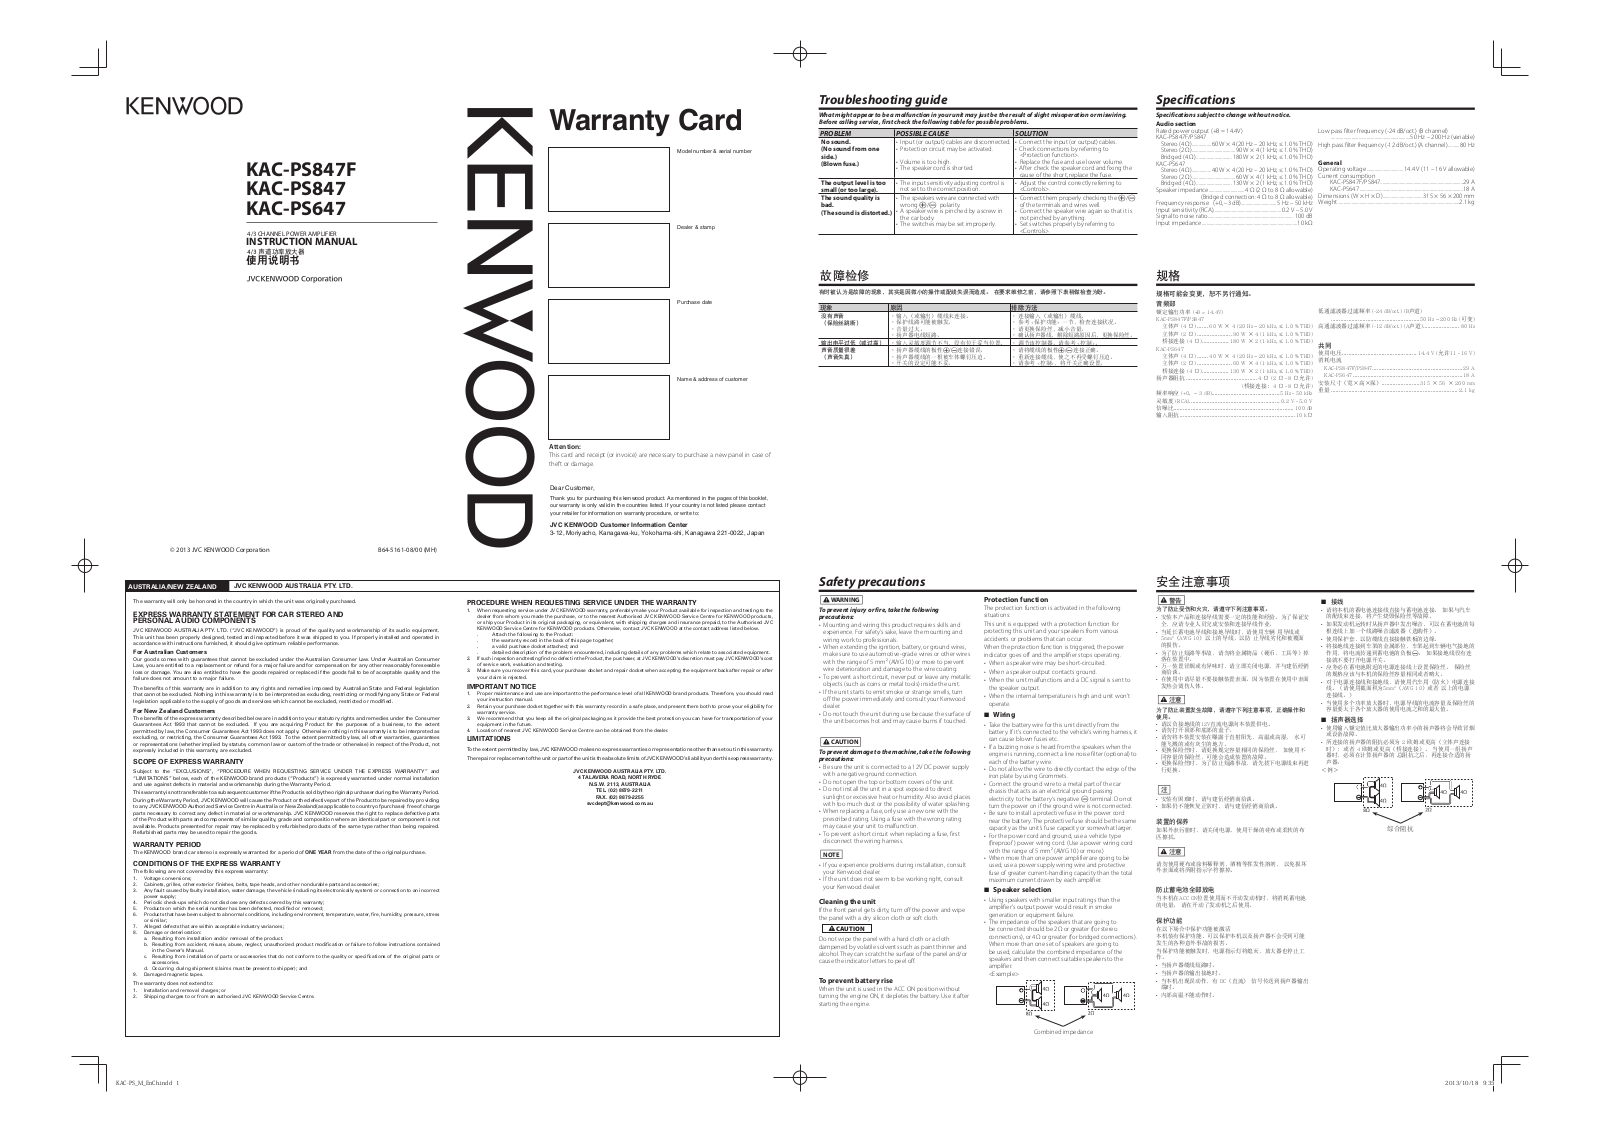 Kenwood KAC-PS647, KAC-PS847F, KAC-PS847 Manual